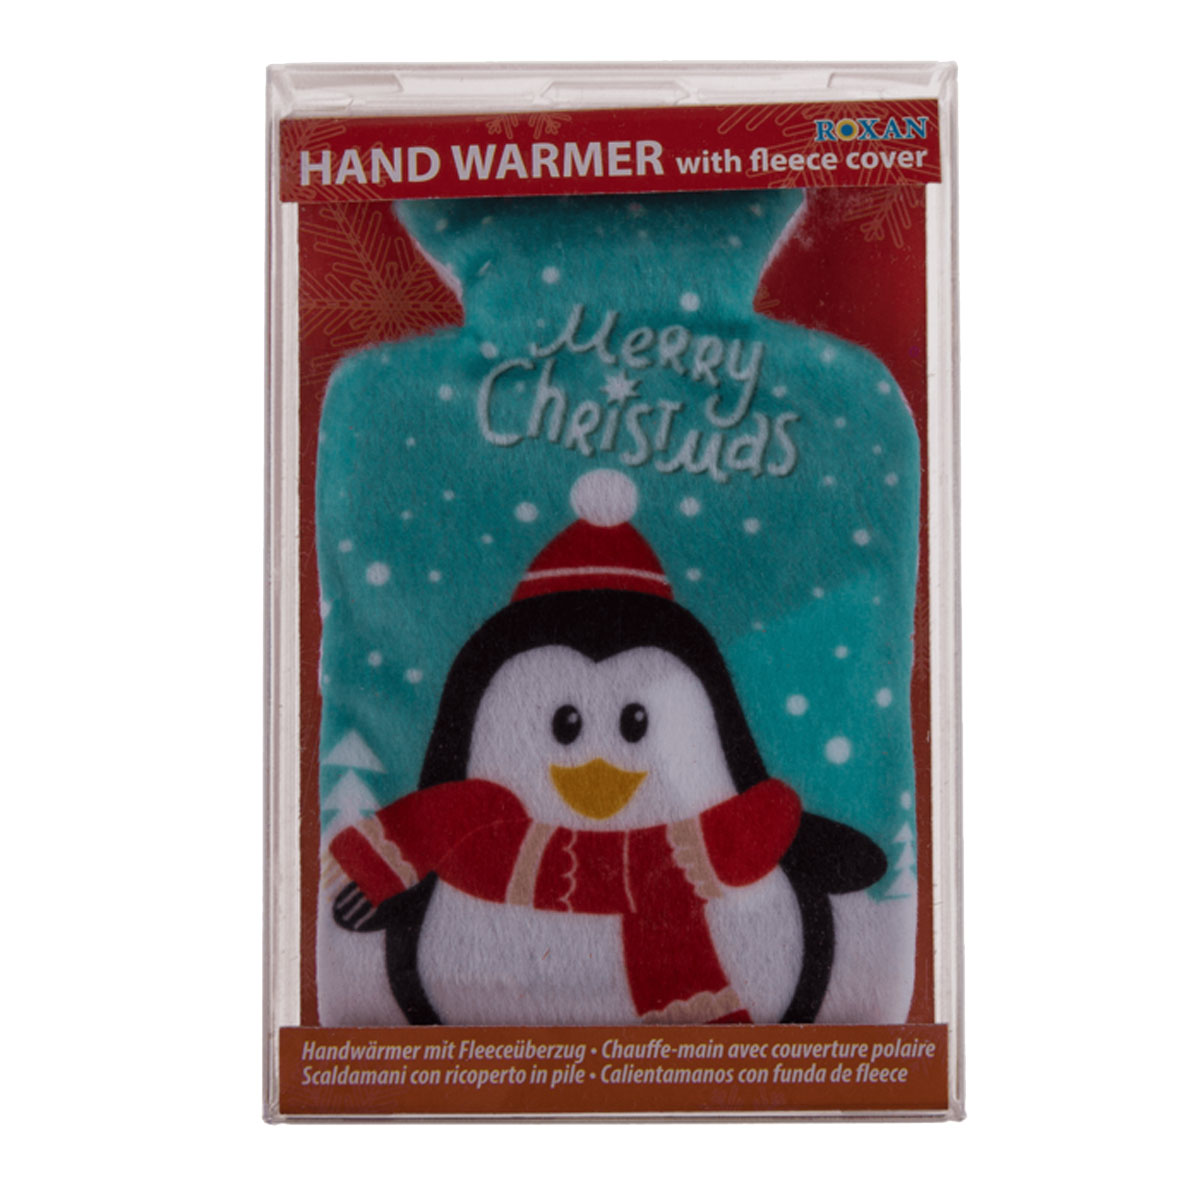 Christmas penguin pocket heater